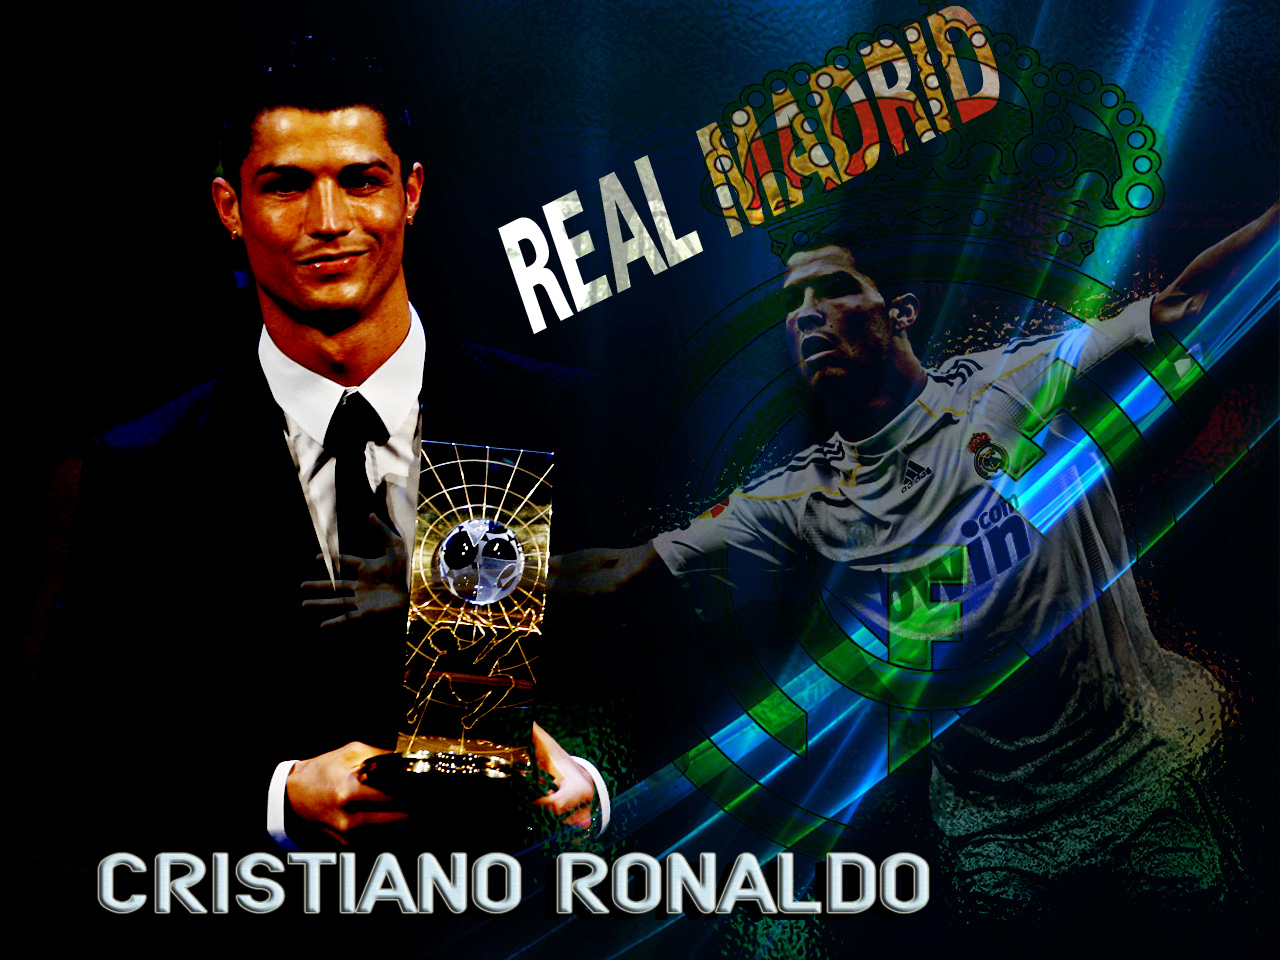 http://3.bp.blogspot.com/-Eq4vuhj6K2Q/TamvzF3pqxI/AAAAAAAAAic/beEFgOvzCjI/s1600/Cristiano-Ronaldo-Real-Madrid-01.jpg